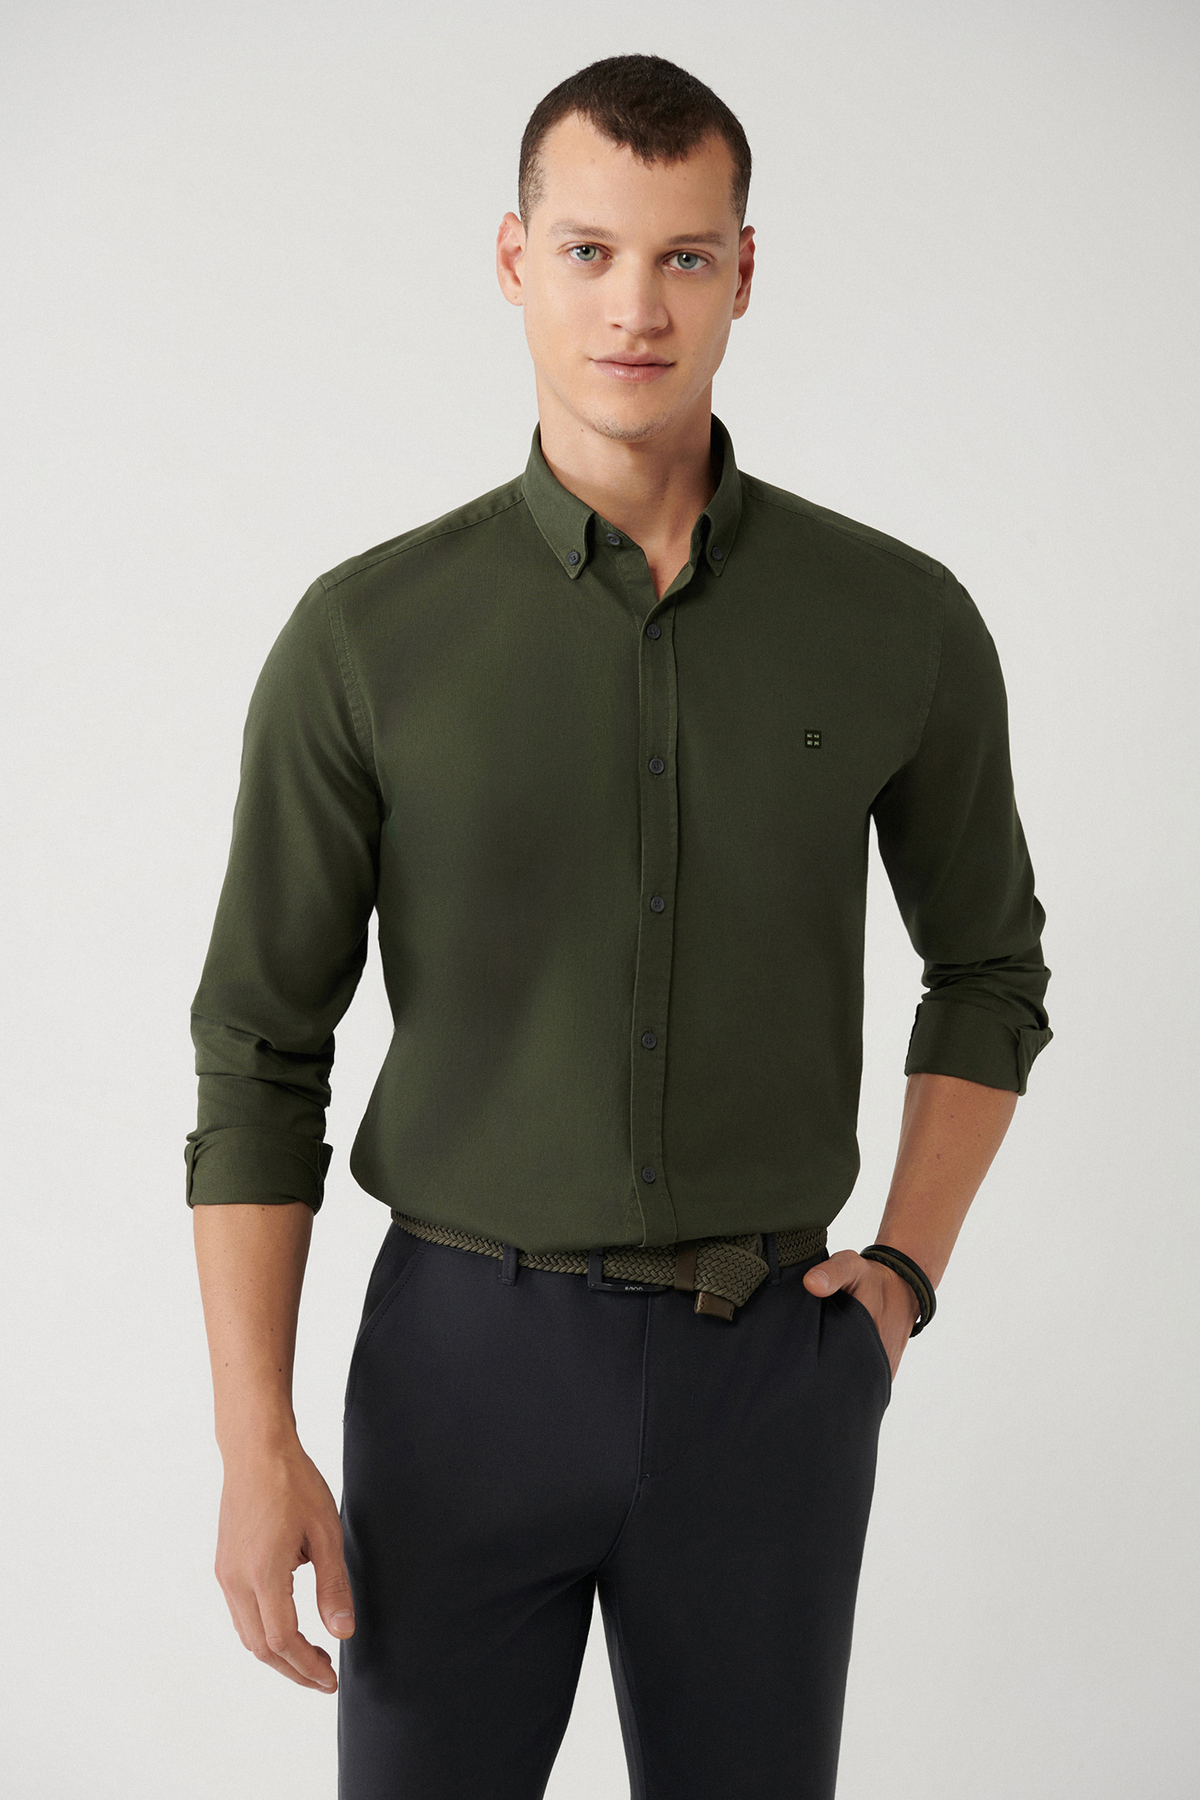 Avva Men's Dark Green Shirt Buttoned Collar 100% Cotton Corduroy Regular Fit